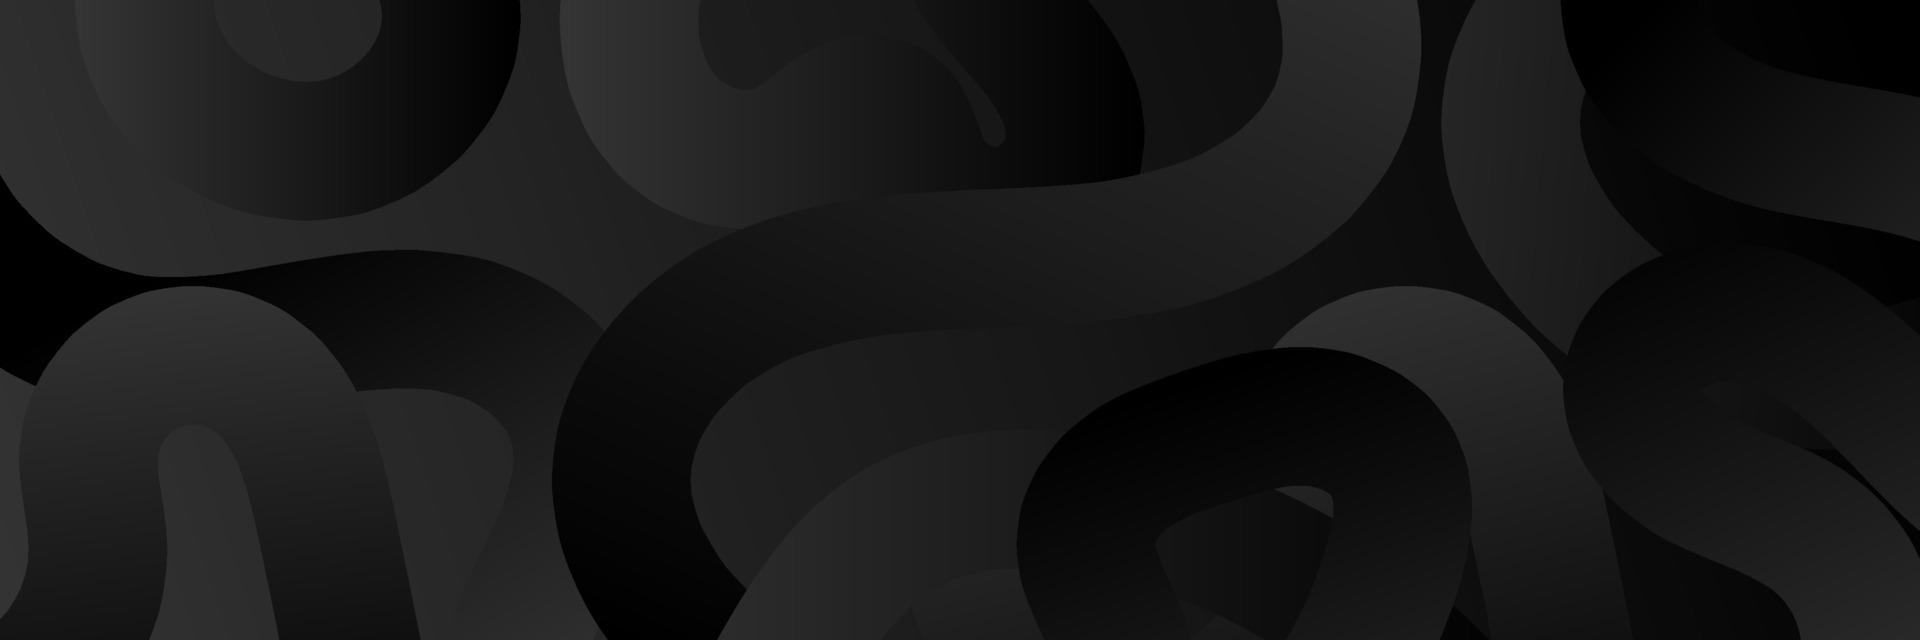 abstrakt svart vektor bakgrund med Ränder. abstrakt svart lutning bakgrund. skinande svart textur. vektor illustration